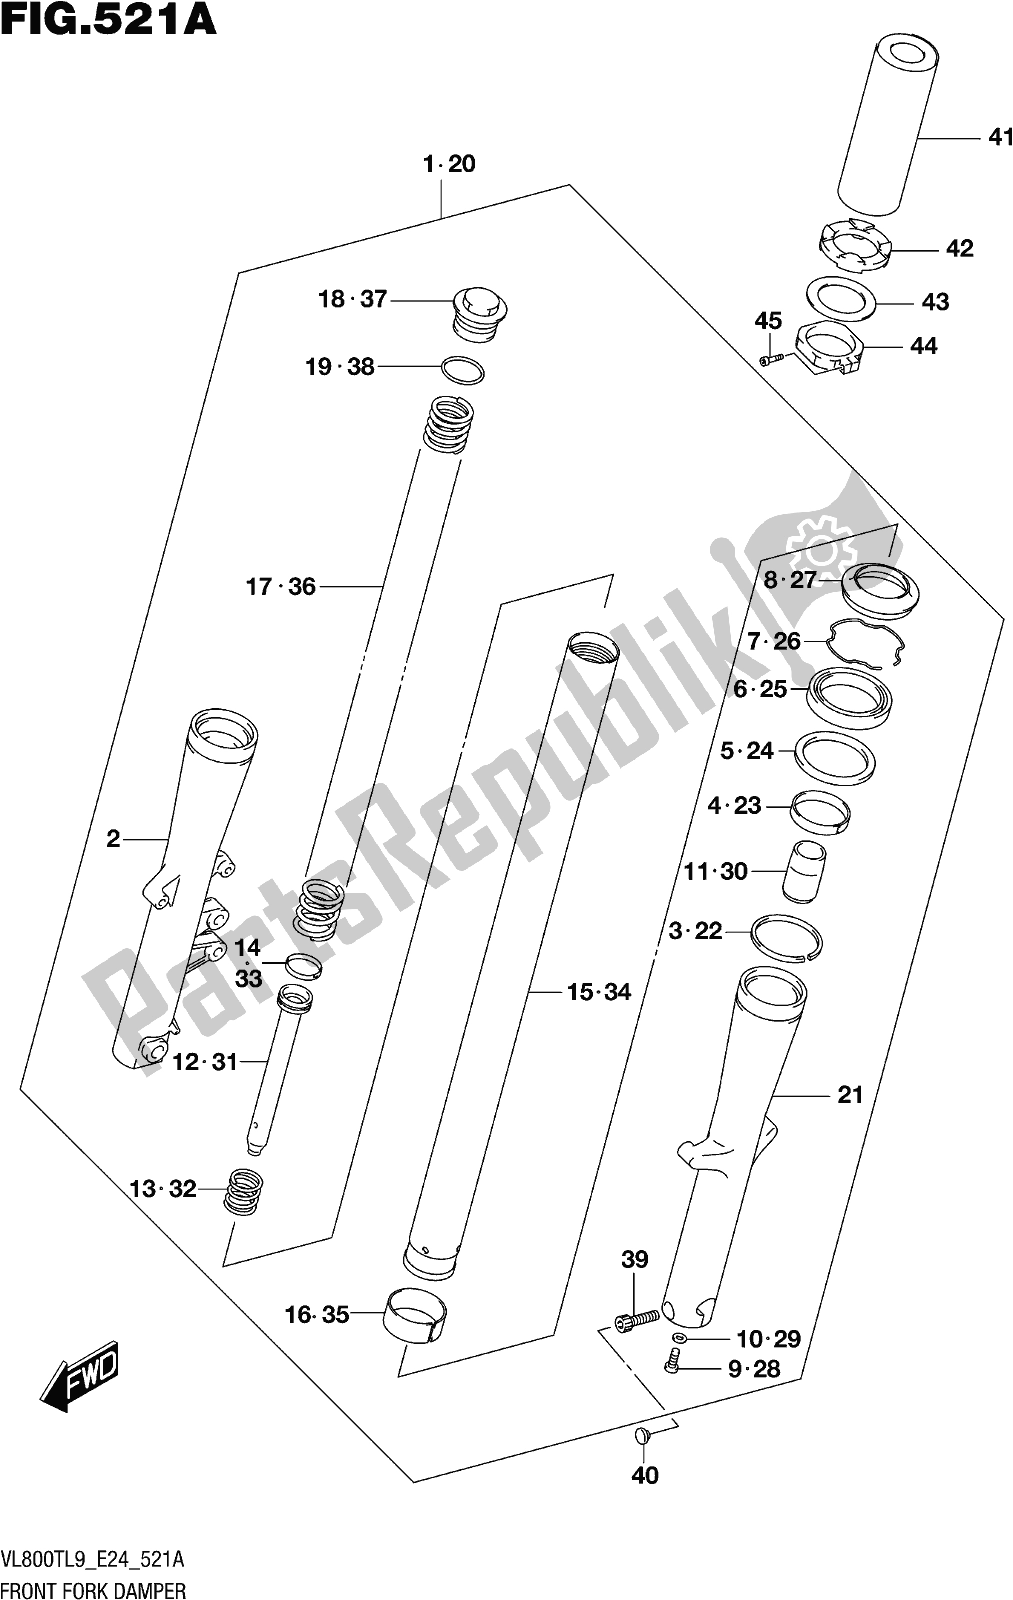 Todas las partes para Fig. 521a Front Fork Damper de Suzuki VL 800T 2019